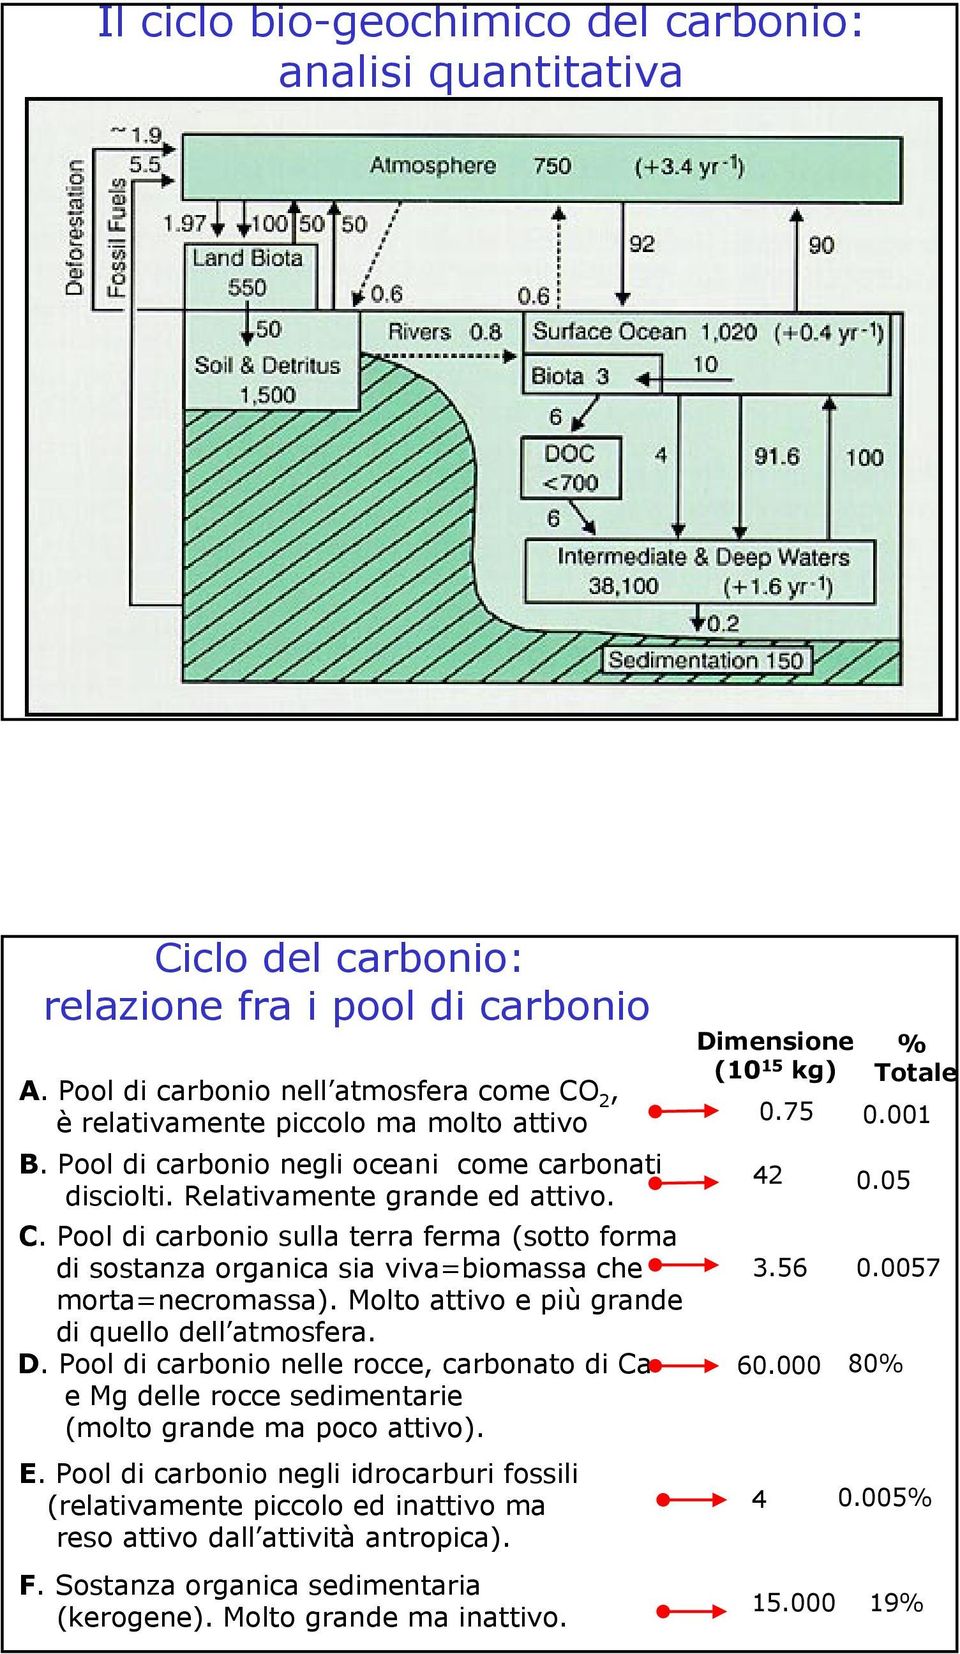 Molto attivo e più grande di quello dell atmosfera. D. Pool di carbonio nelle rocce, carbonato di Ca e Mg delle rocce sedimentarie (molto grande ma poco attivo). E.